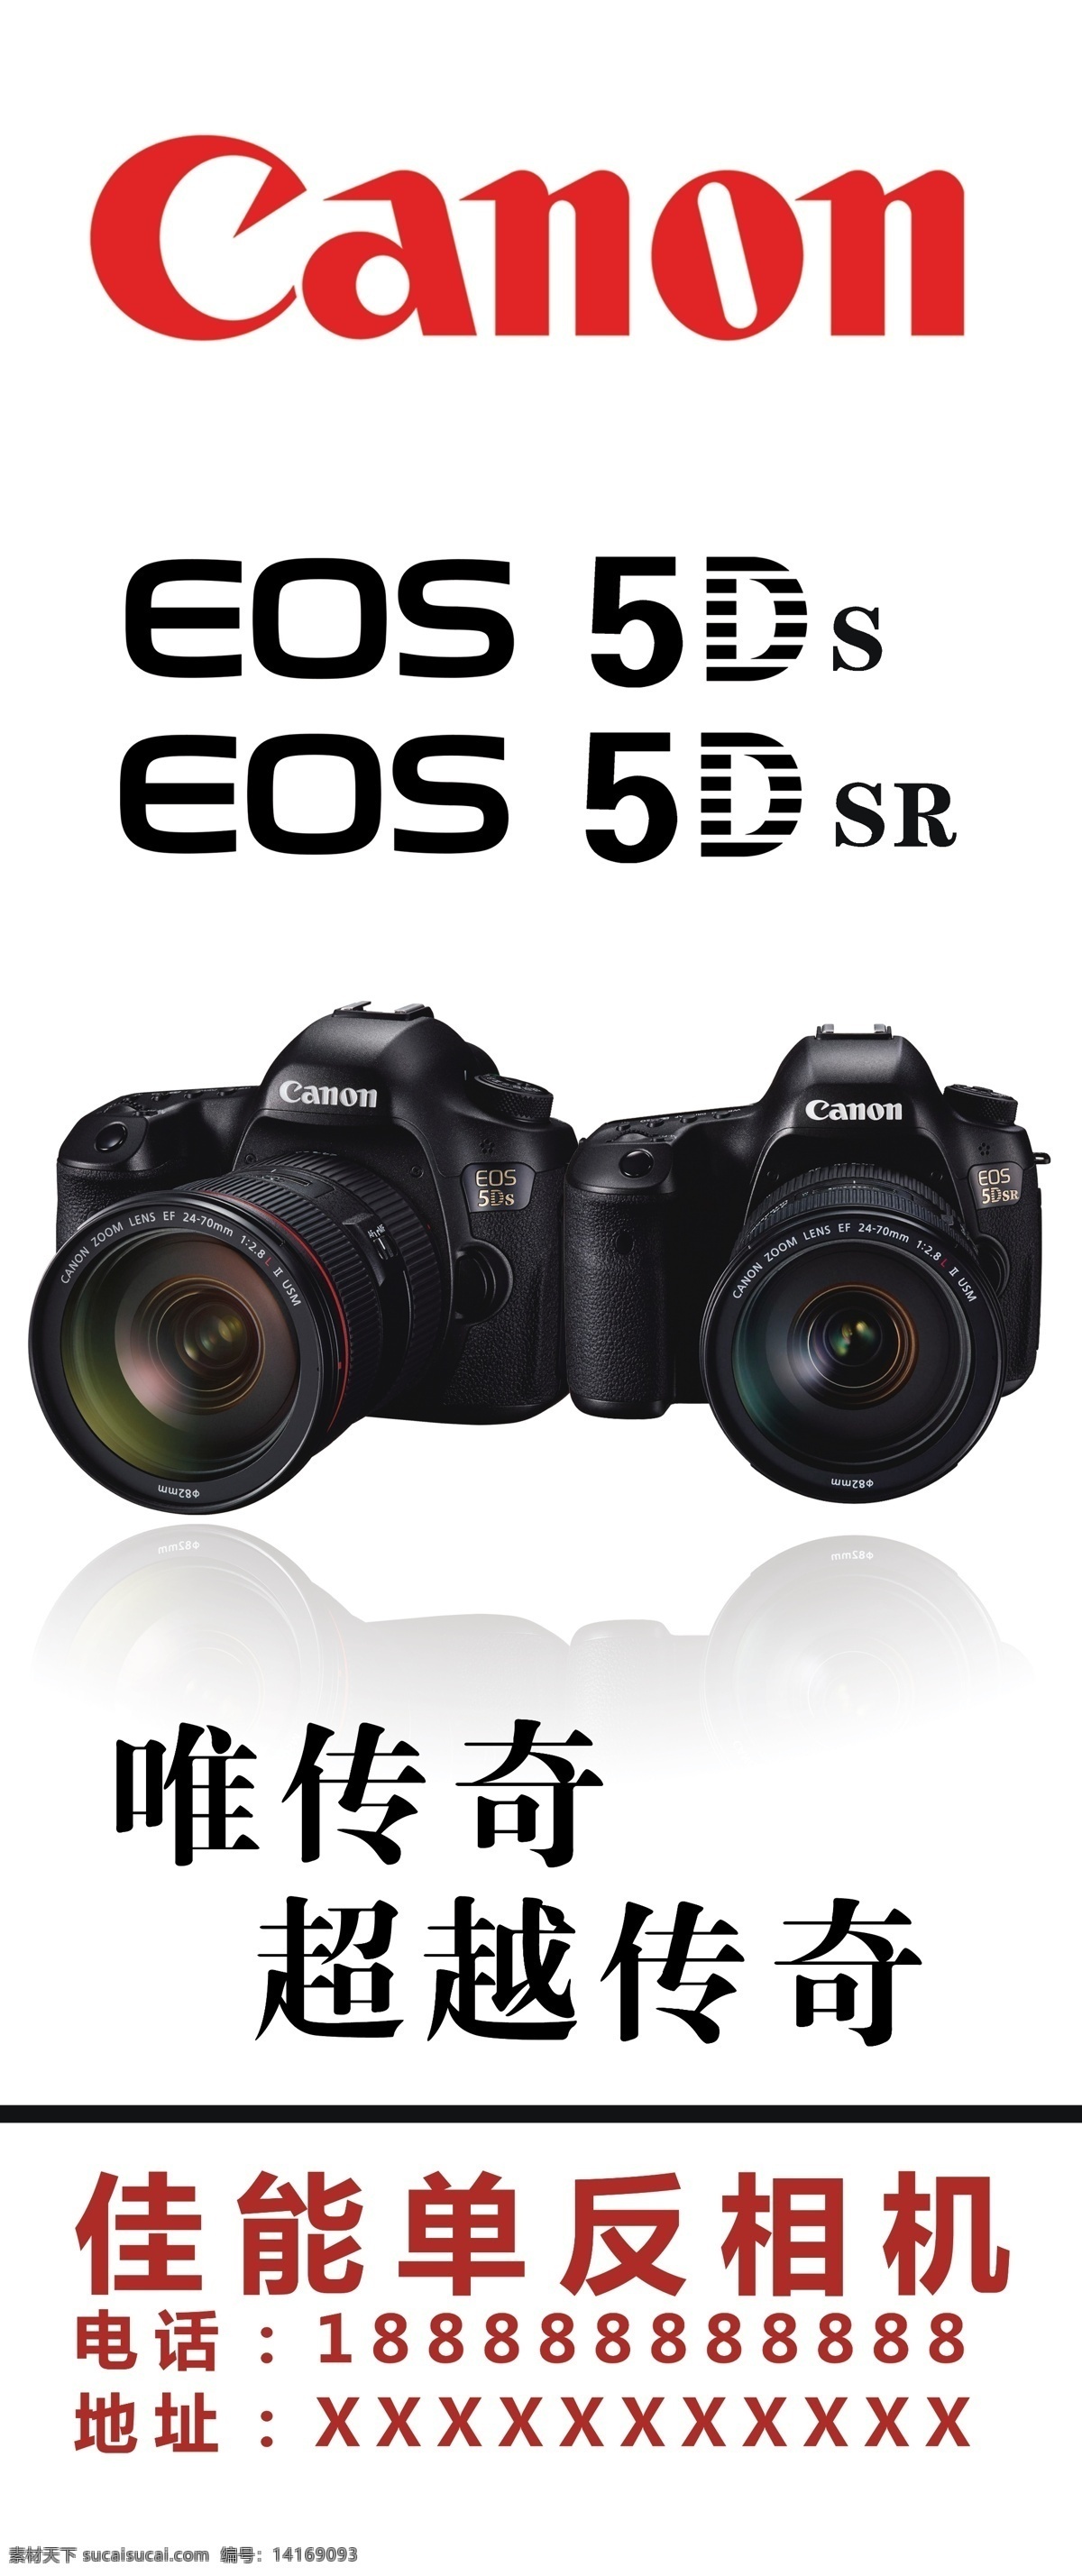 佳能5dsr 佳能5d 佳能相机 佳能单反 相机 设计图集